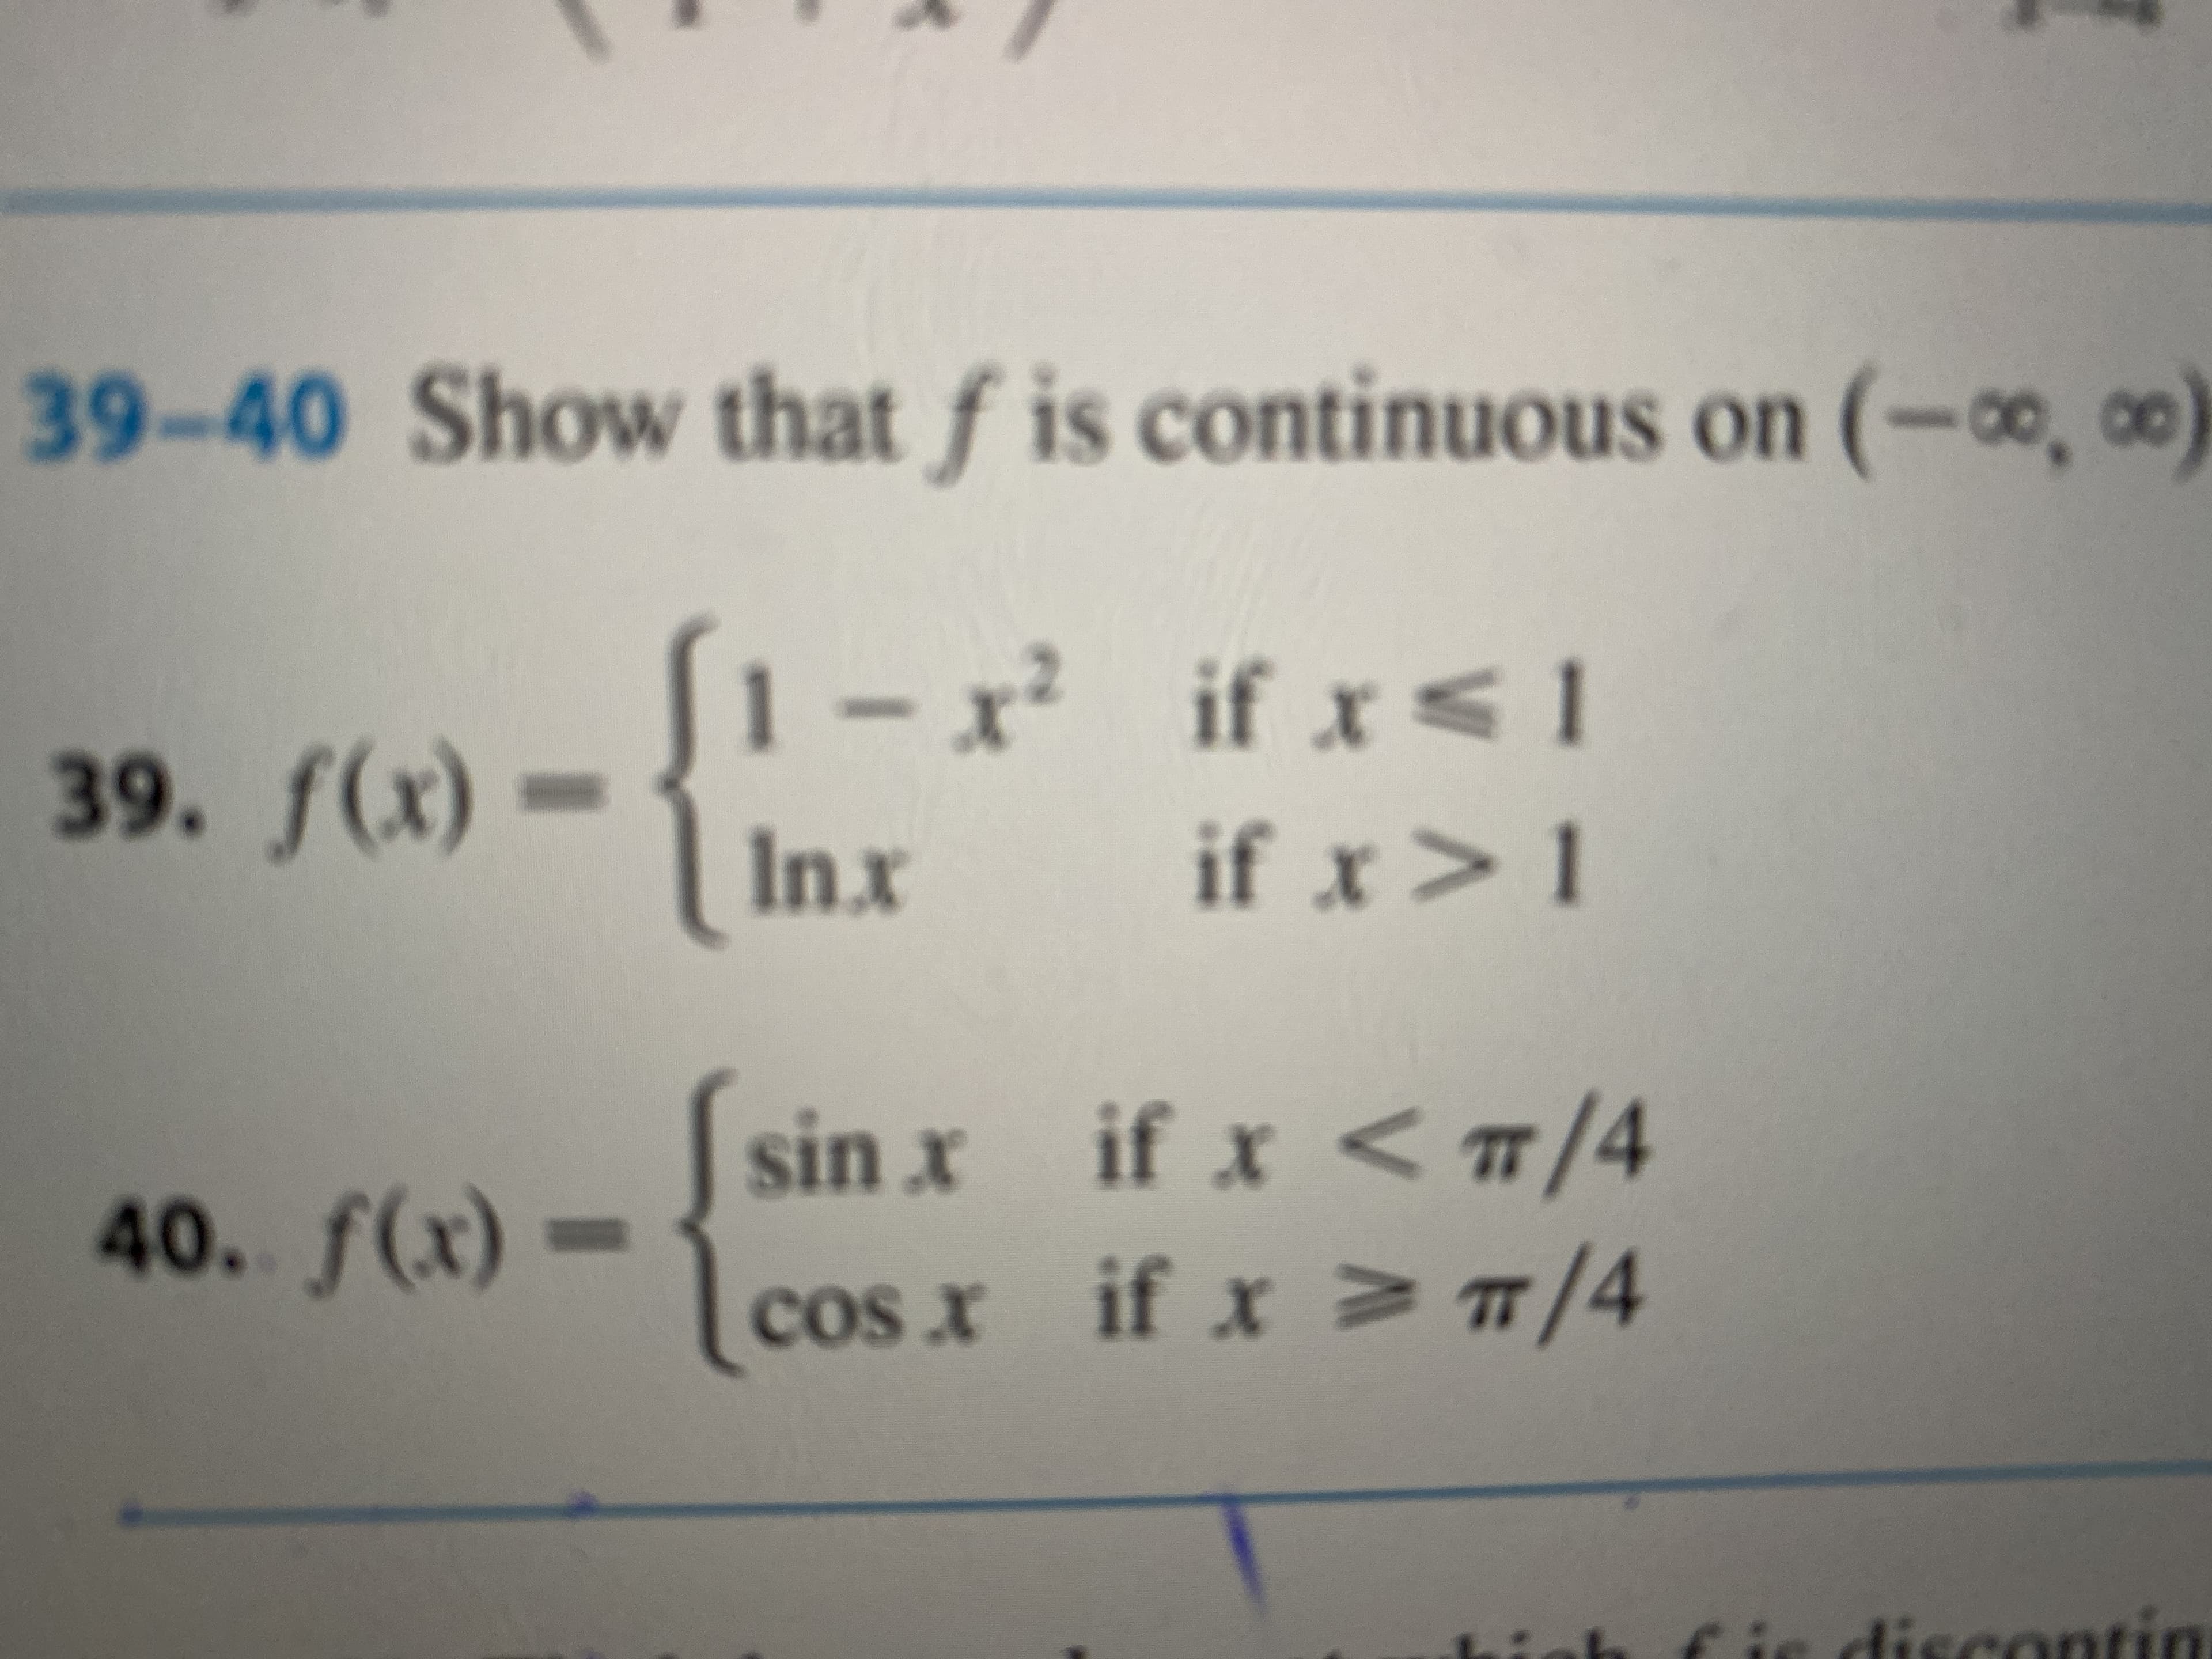 39-40 Show that f is continuous on (-, co)
x if x<1
1-
39. f(x) -
if x>1
Inx
sin x if x <1/4
TT
40. f(x) =
cos x if xVĦ/4
discontin
lise
